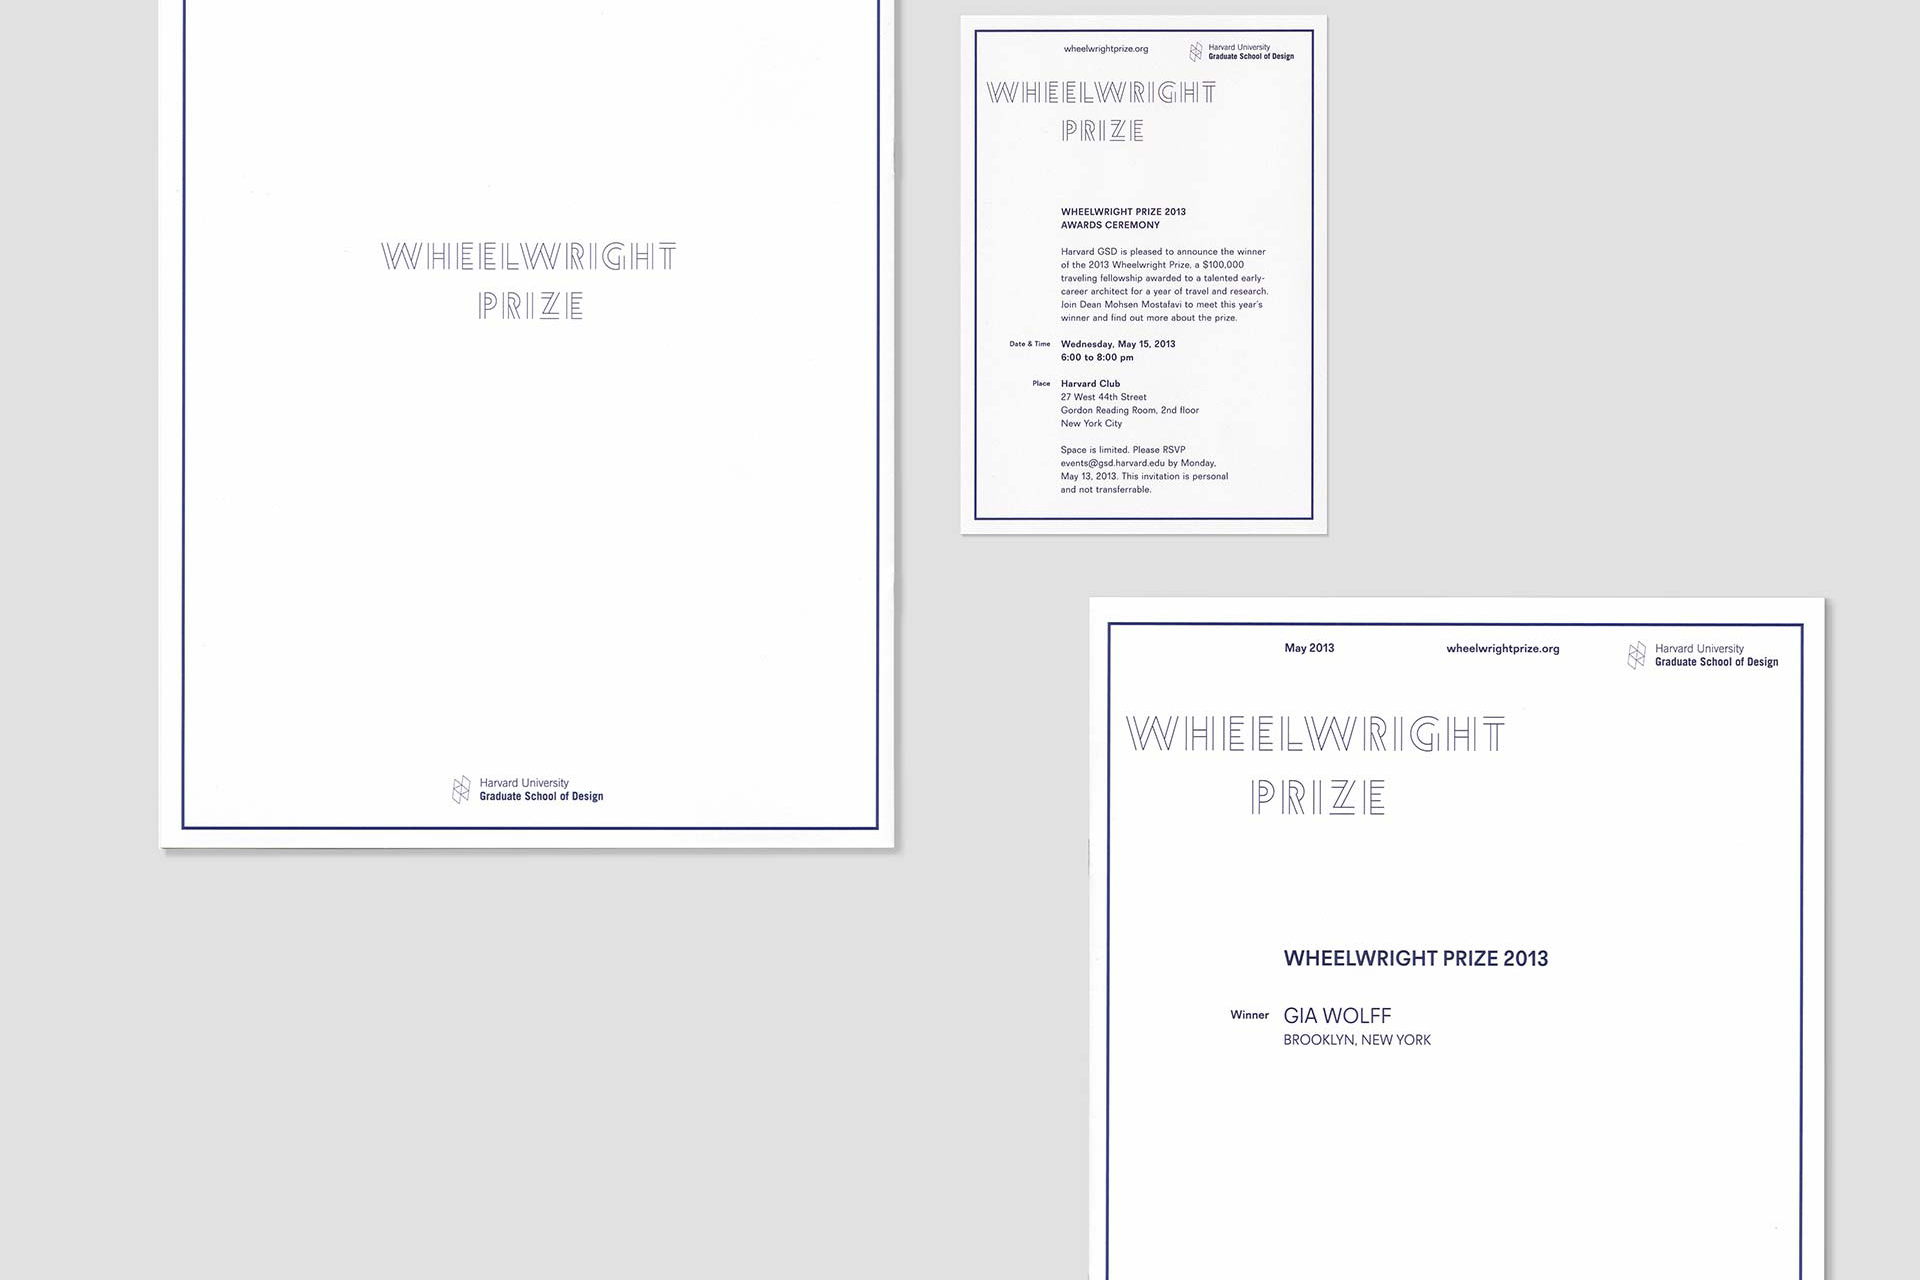 Wheelwright Prize